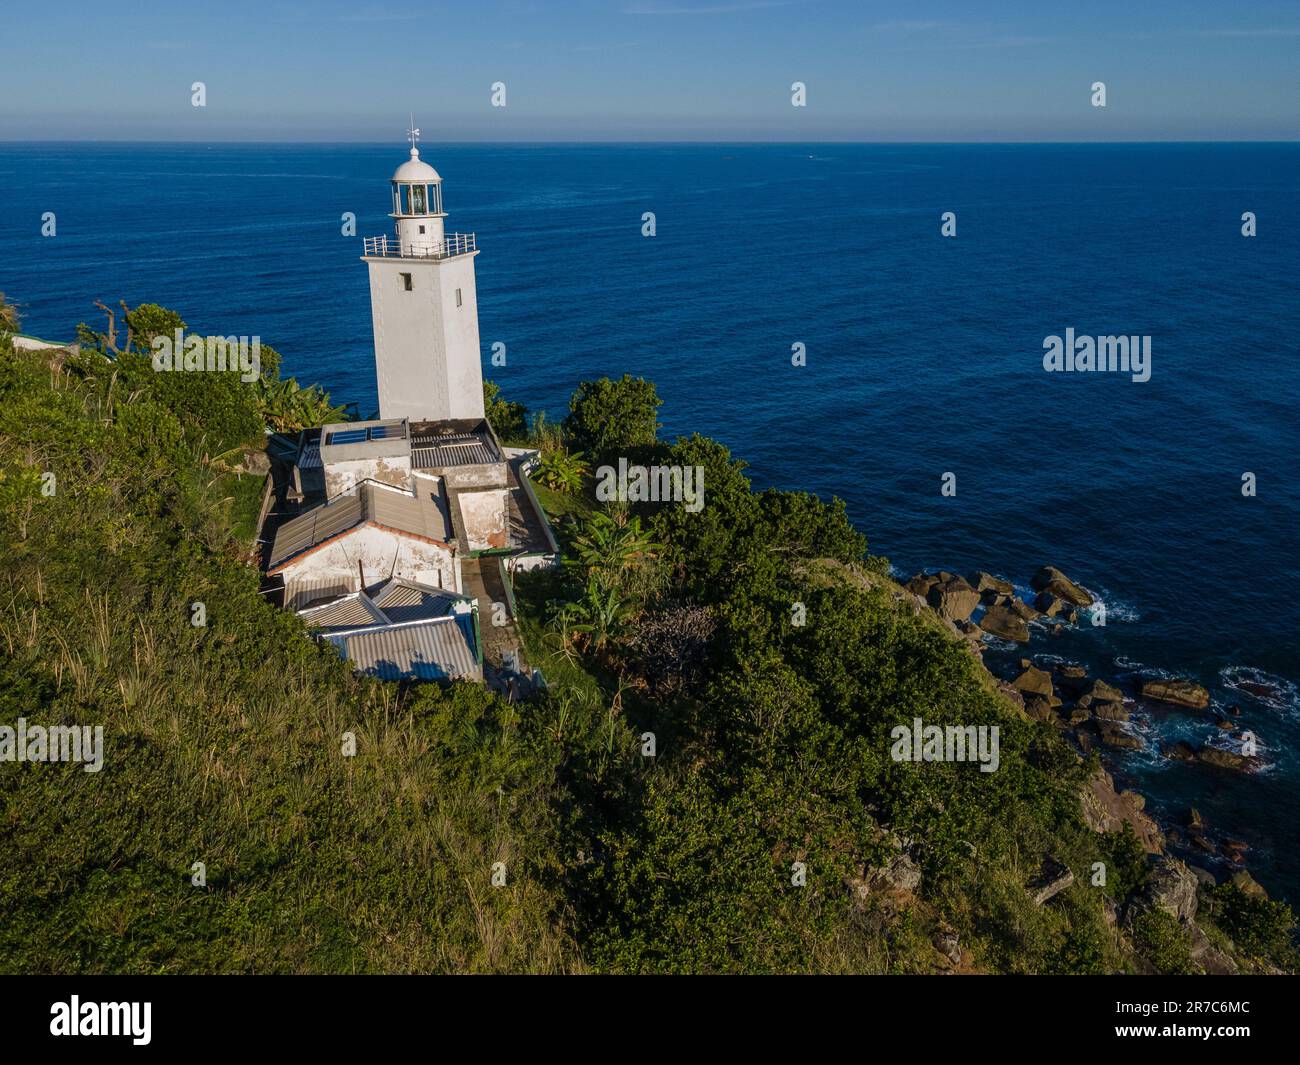 Le phare de Ponta do Boi, à Ilhabela, au sud-est du Brésil Banque D'Images